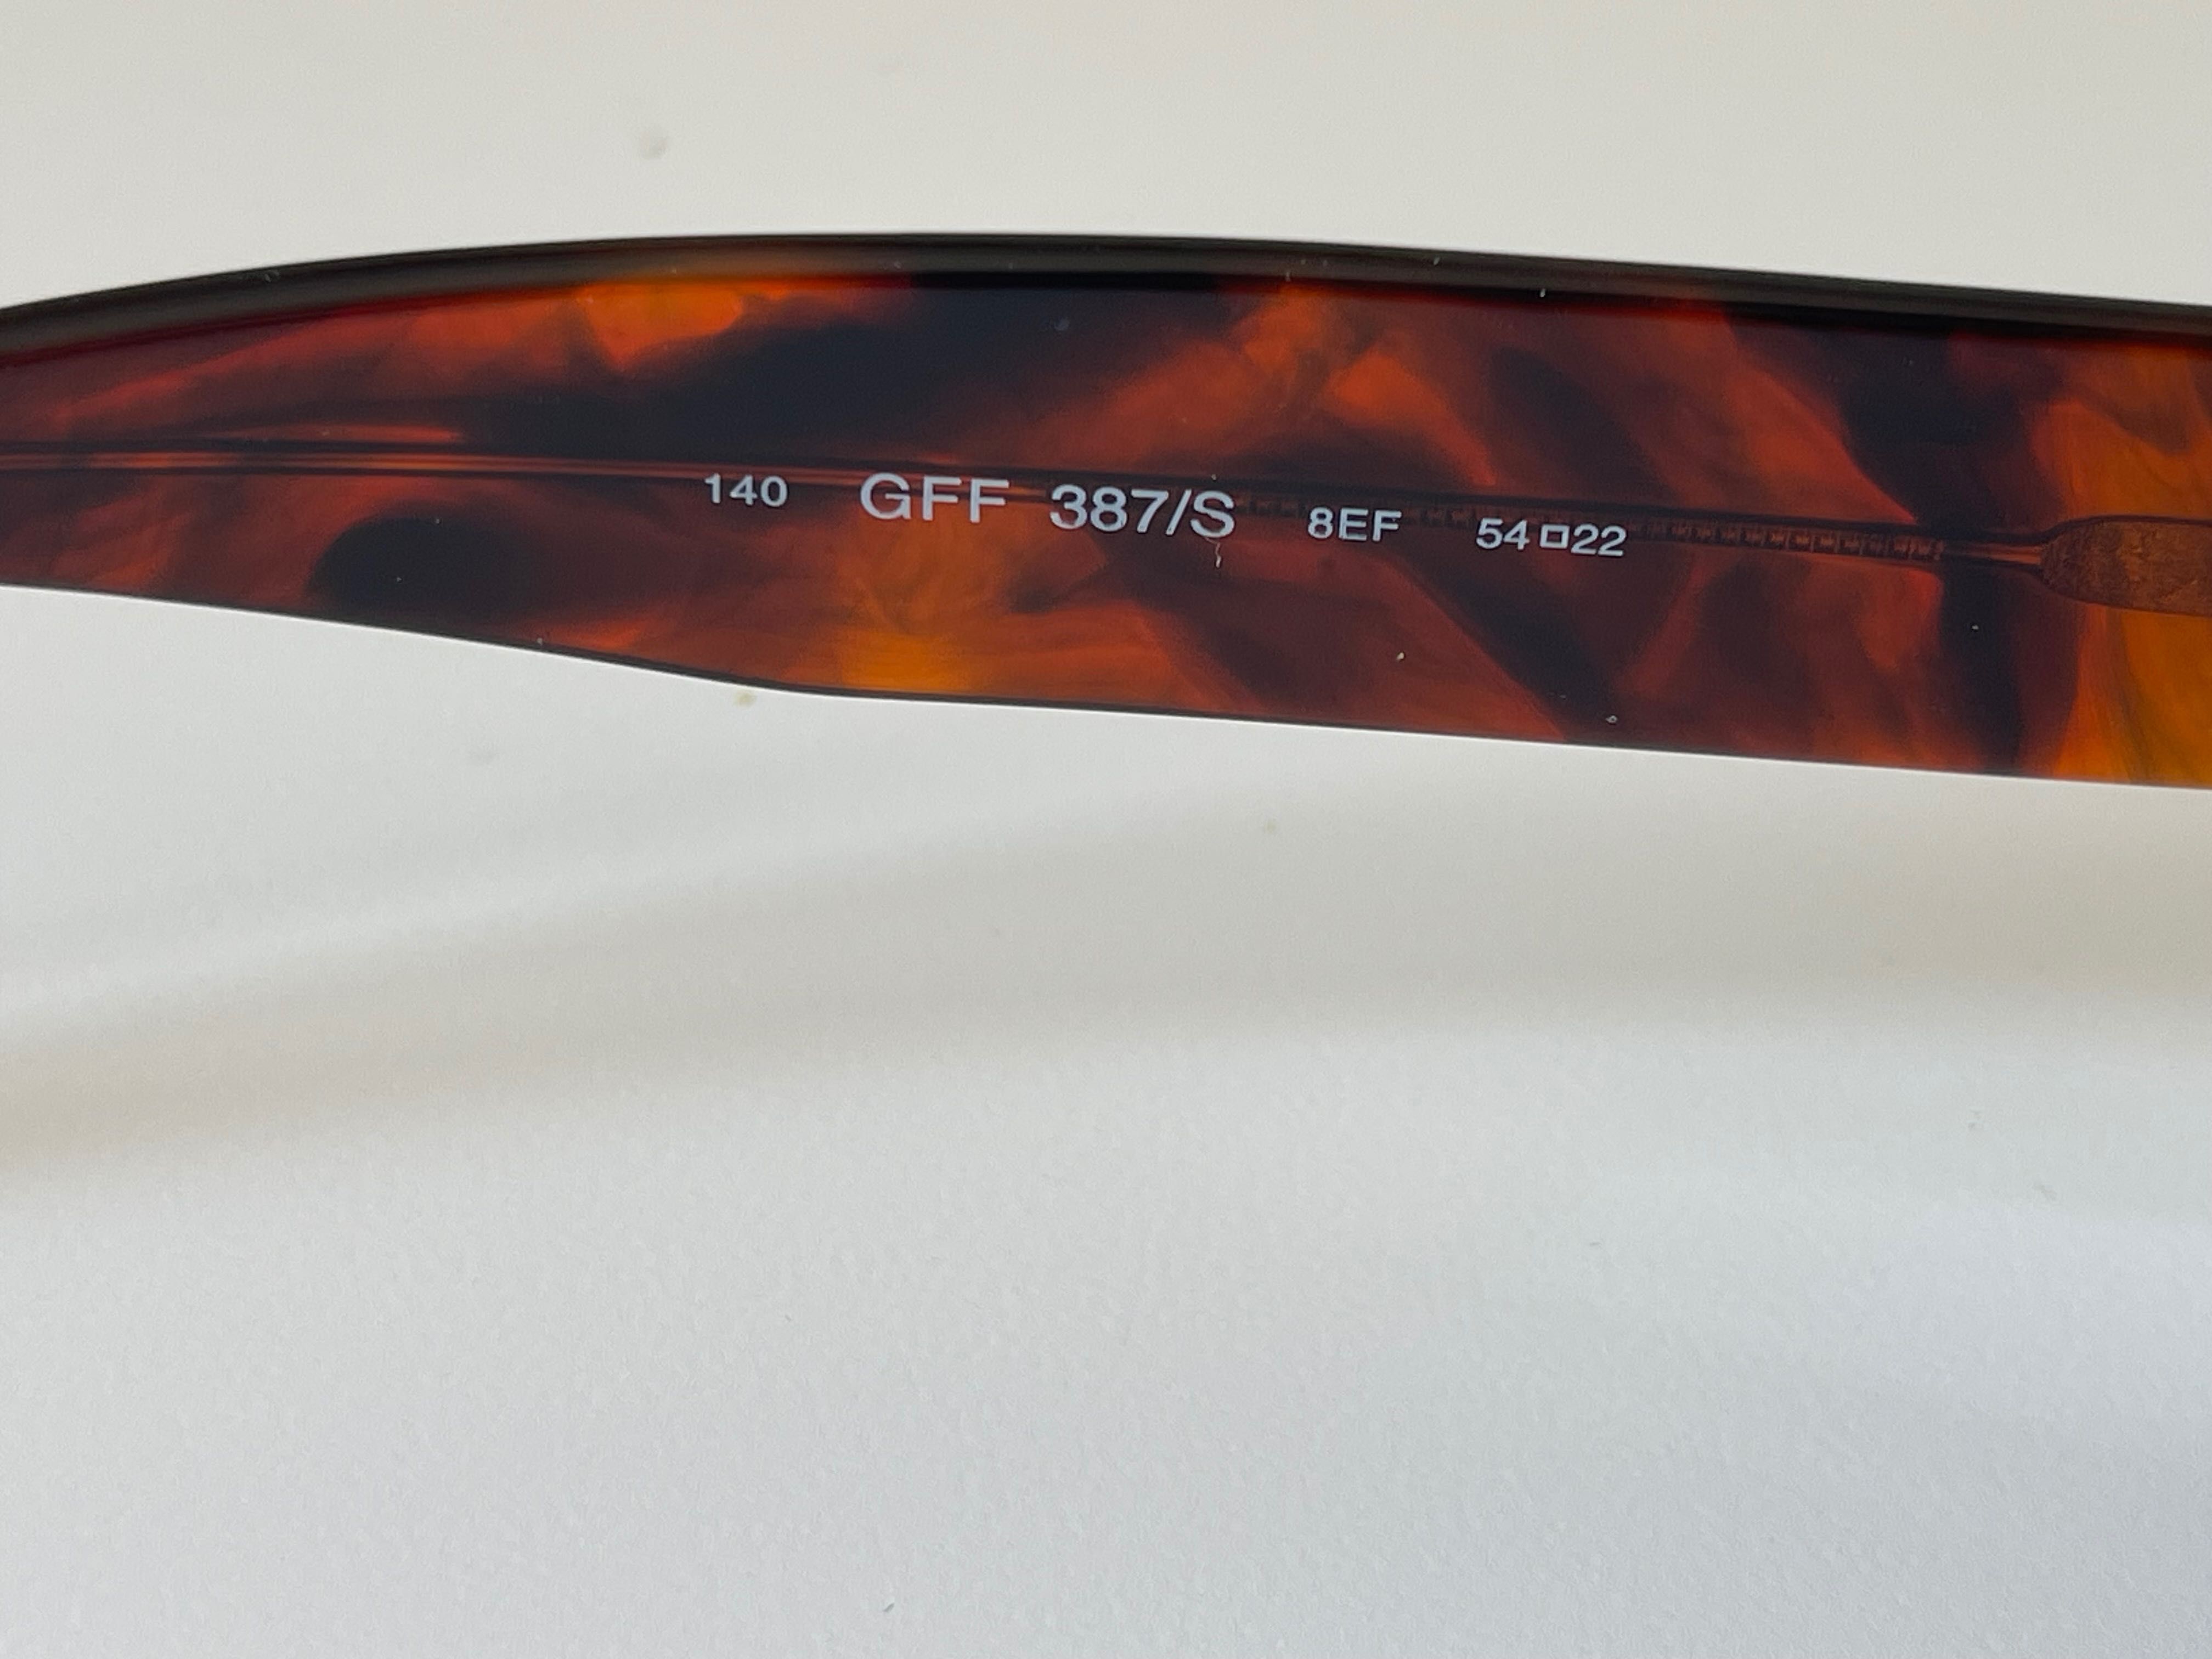 Óculos de sol Gianfranco FERRE 387/S